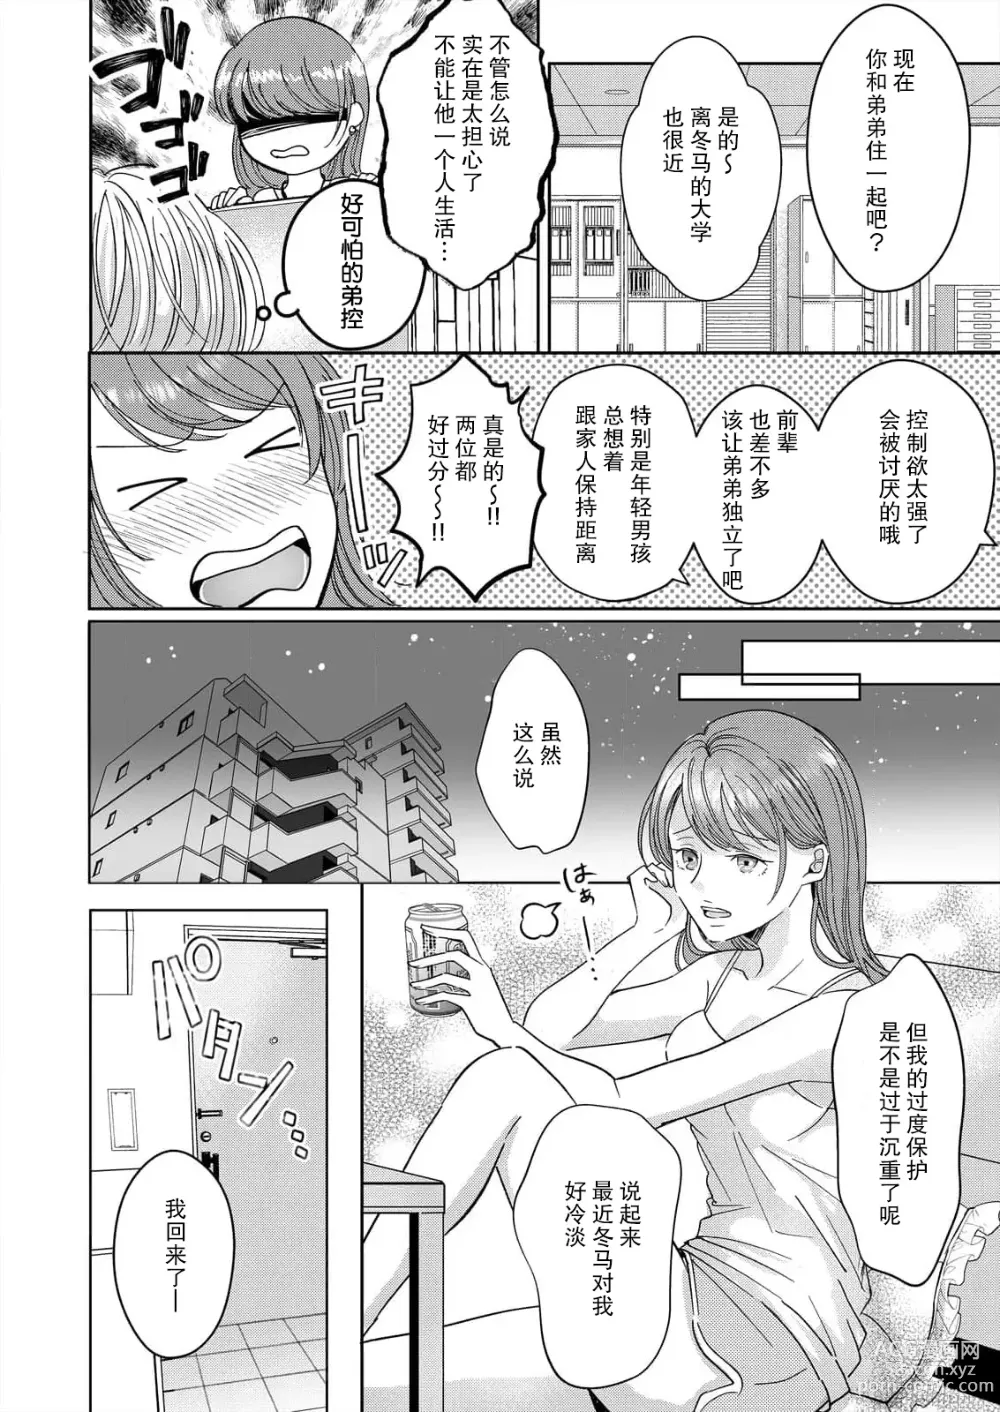 Page 4 of manga 姐弟时间结束~要做一些不能做的事情吗？1-2